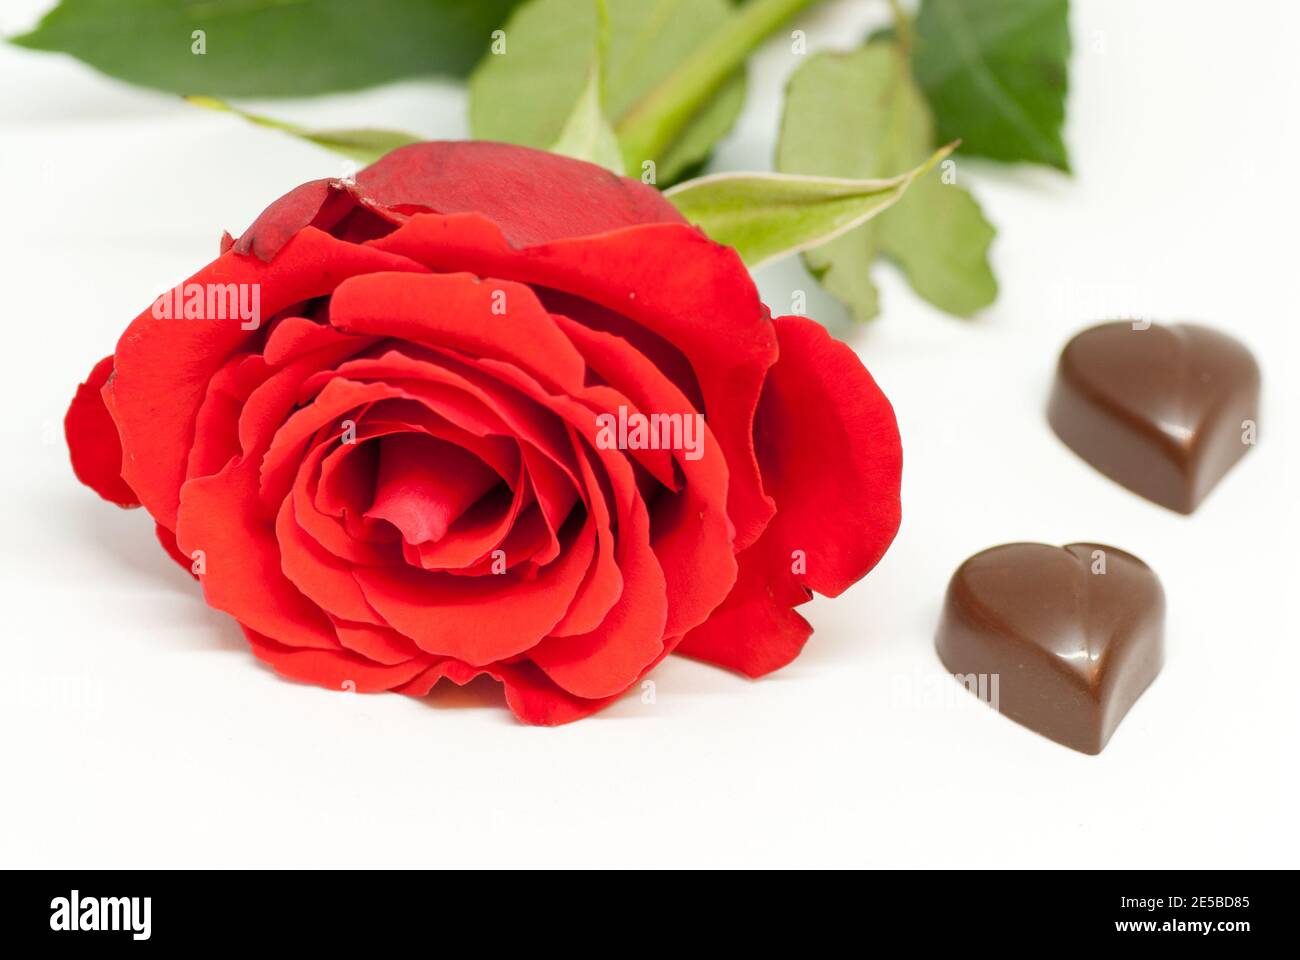 rosa rossa e varie forme di cioccolato su bianco fondo amore il concetto di giorno di san valentino romantico Foto Stock